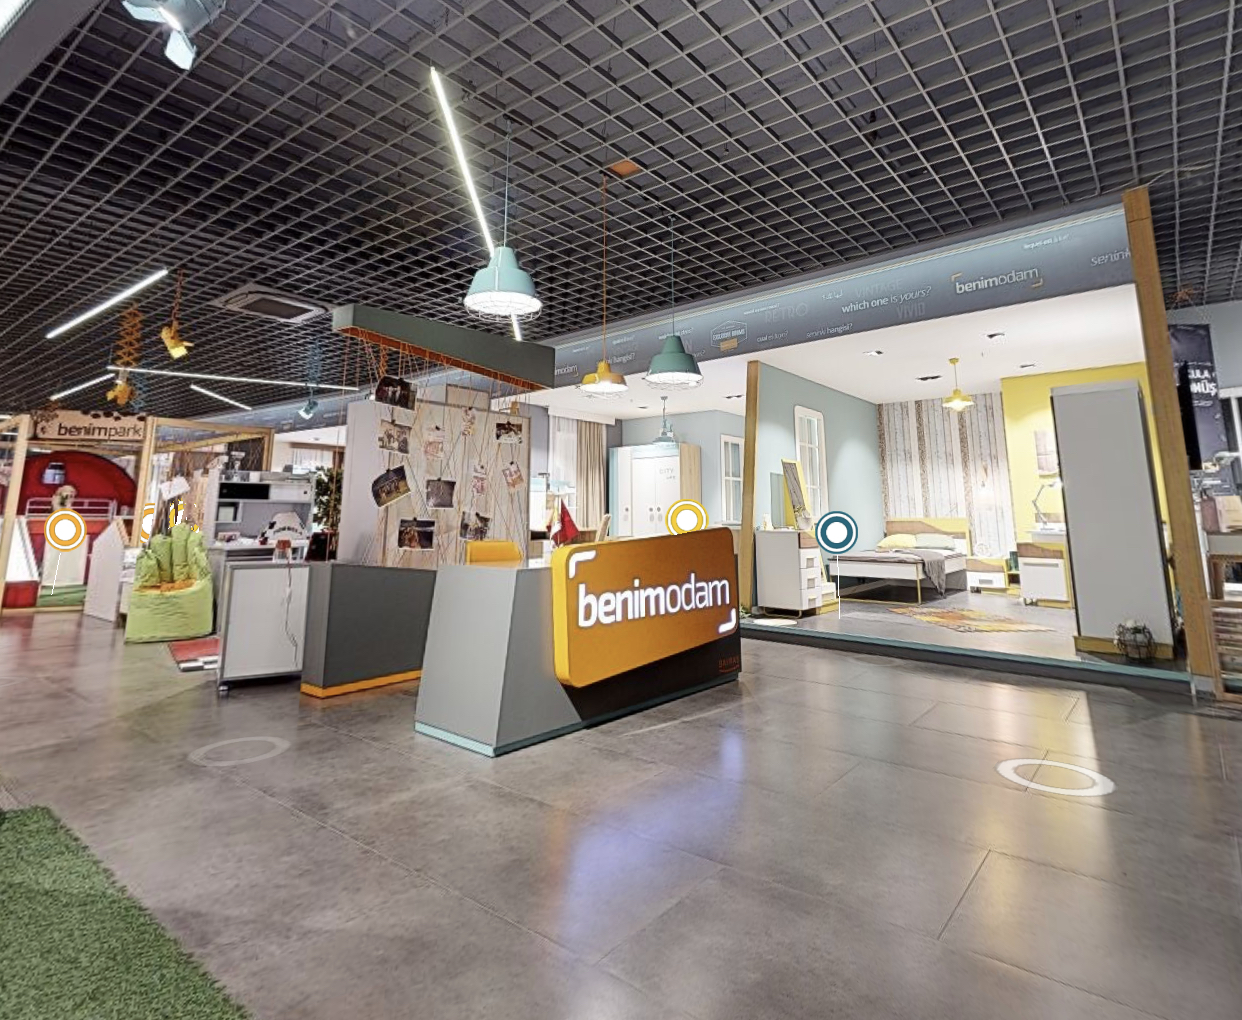 شركة Benimodam للأثاث المنزلي في تركيا